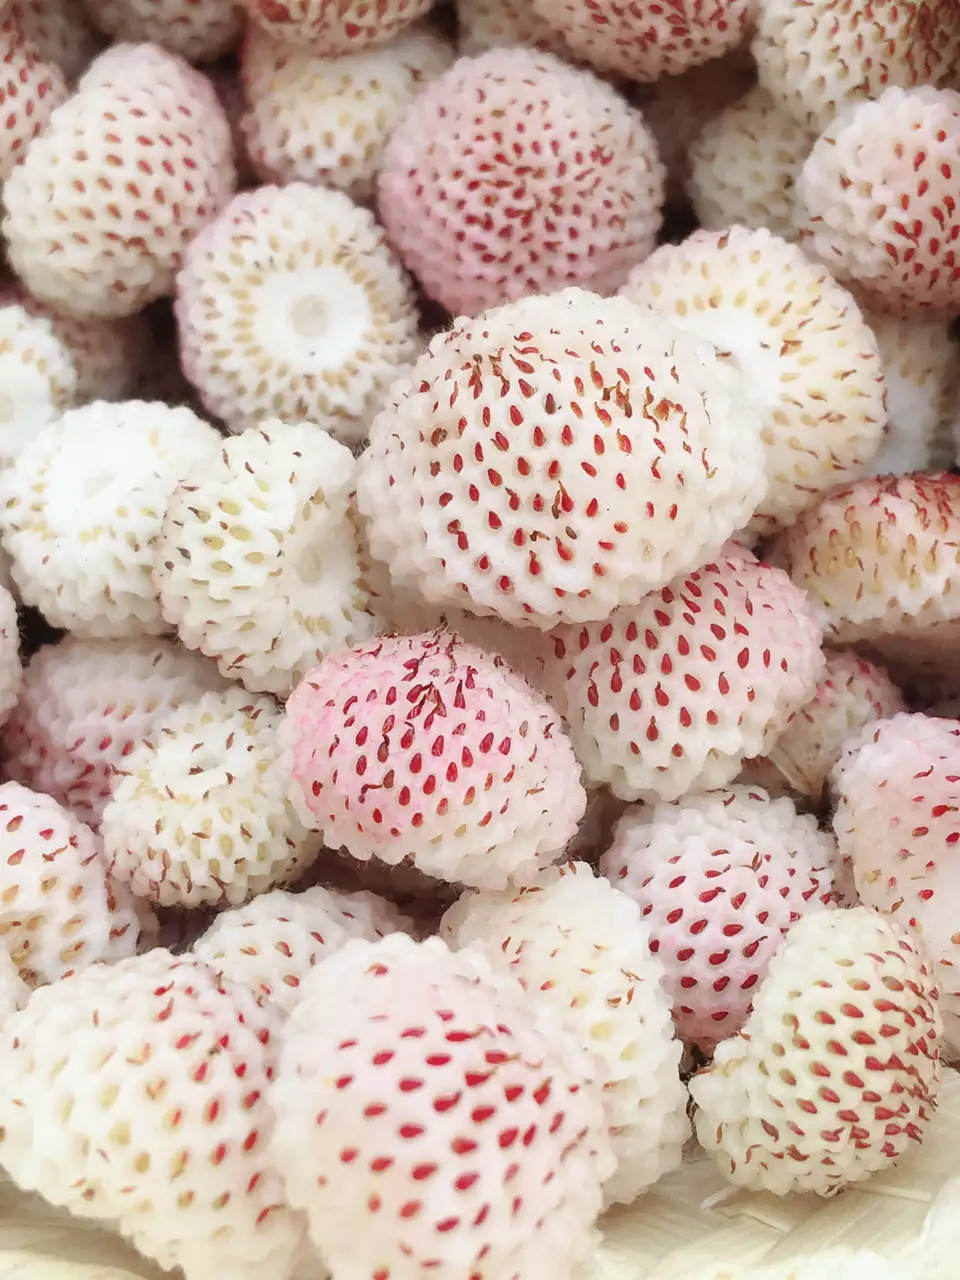 又到了一年最爱的野生白草莓成熟时节,吃货们,该约起来了哟